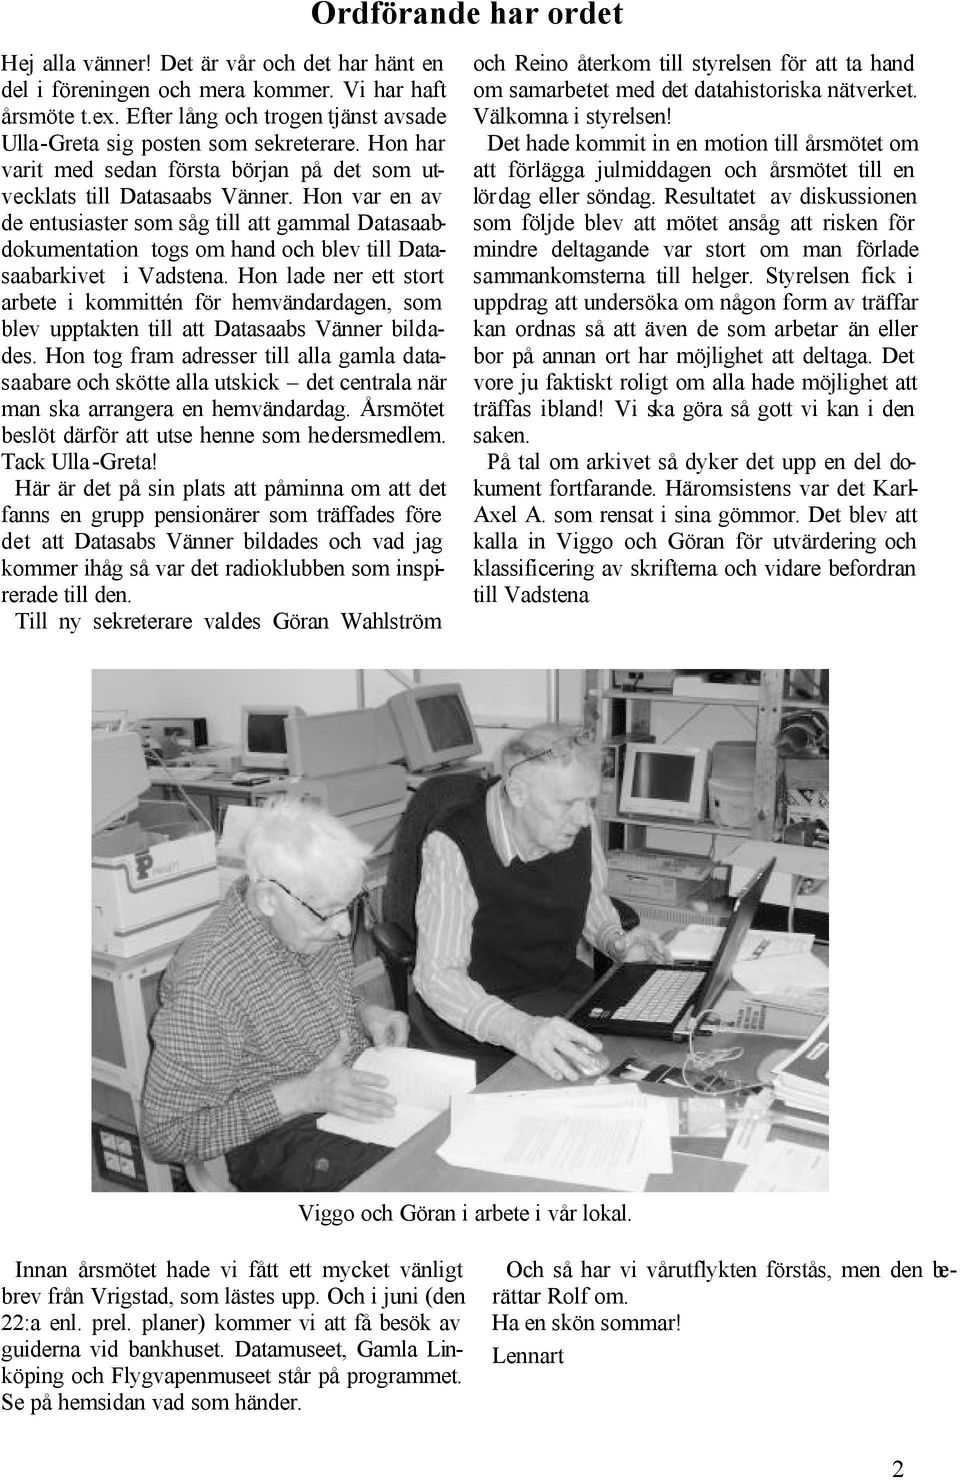 Hon var en av de entusiaster som såg till att gammal Datasaabdokumentation togs om hand och blev till Datasaabarkivet i Vadstena.